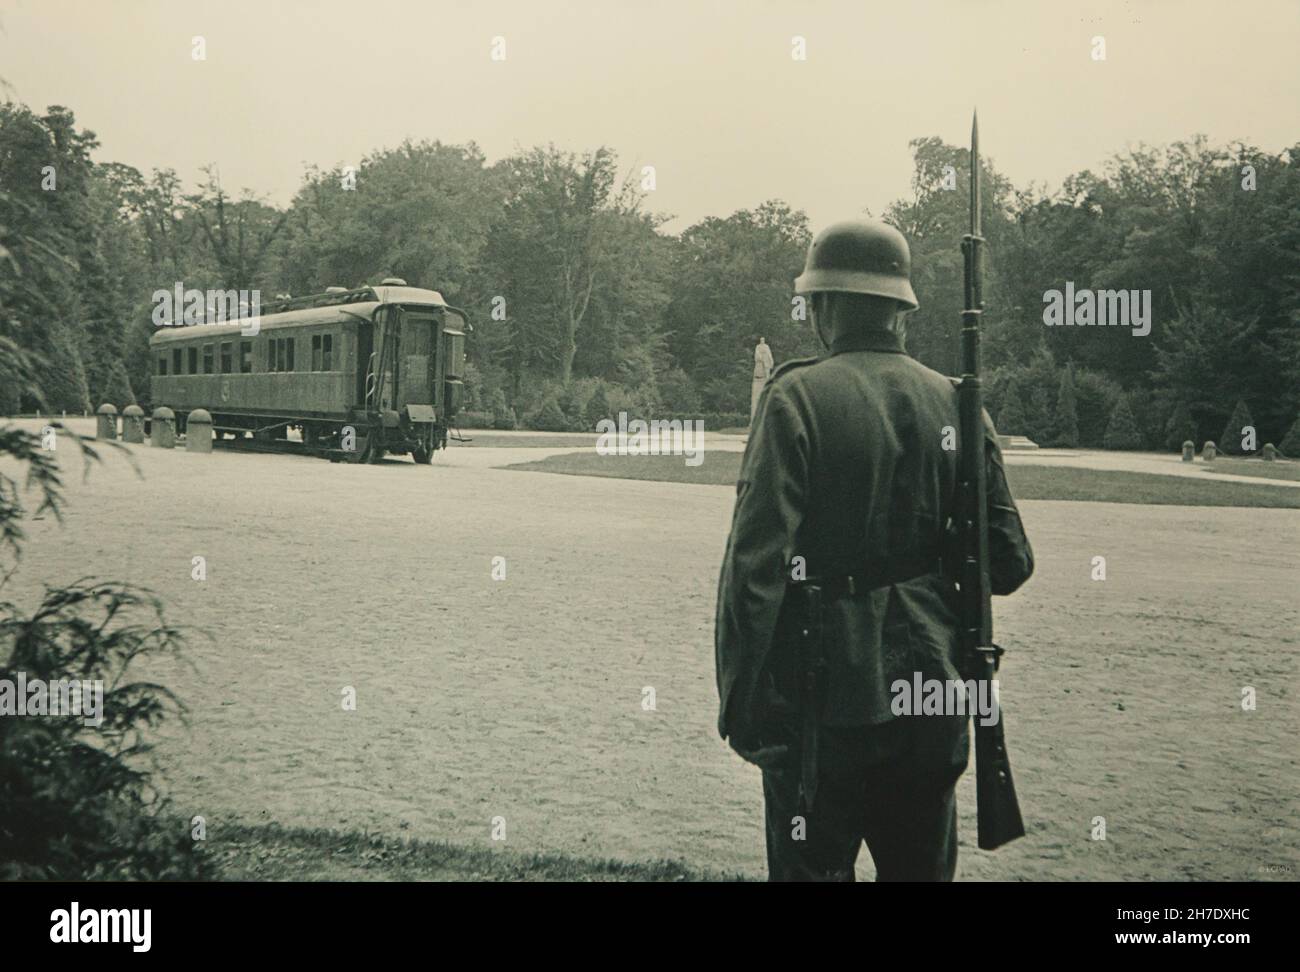 Le soldat allemand garde à côté du chariot de Compiègne du Maréchal Ferdinand Foch au sol de la Glade de l'Armistice dans la Forêt de Compiègne (Forêt de Compiègne)En juin 1940, sur le site où l'armistice du 11 novembre 1918 qui a mis fin à la première Guerre mondiale a été signé.L'armistice du 22 juin 1940 après que l'Allemagne ait gagné la bataille de France a également été signé au même endroit dans le même wagon.L'original du chariot de Compiègne a été détruit en feu en avril 1945 pendant la Seconde Guerre mondialePhotographie vintage en noir et blanc d'un photographe inconnu datée du 1940 juin sur dis Banque D'Images